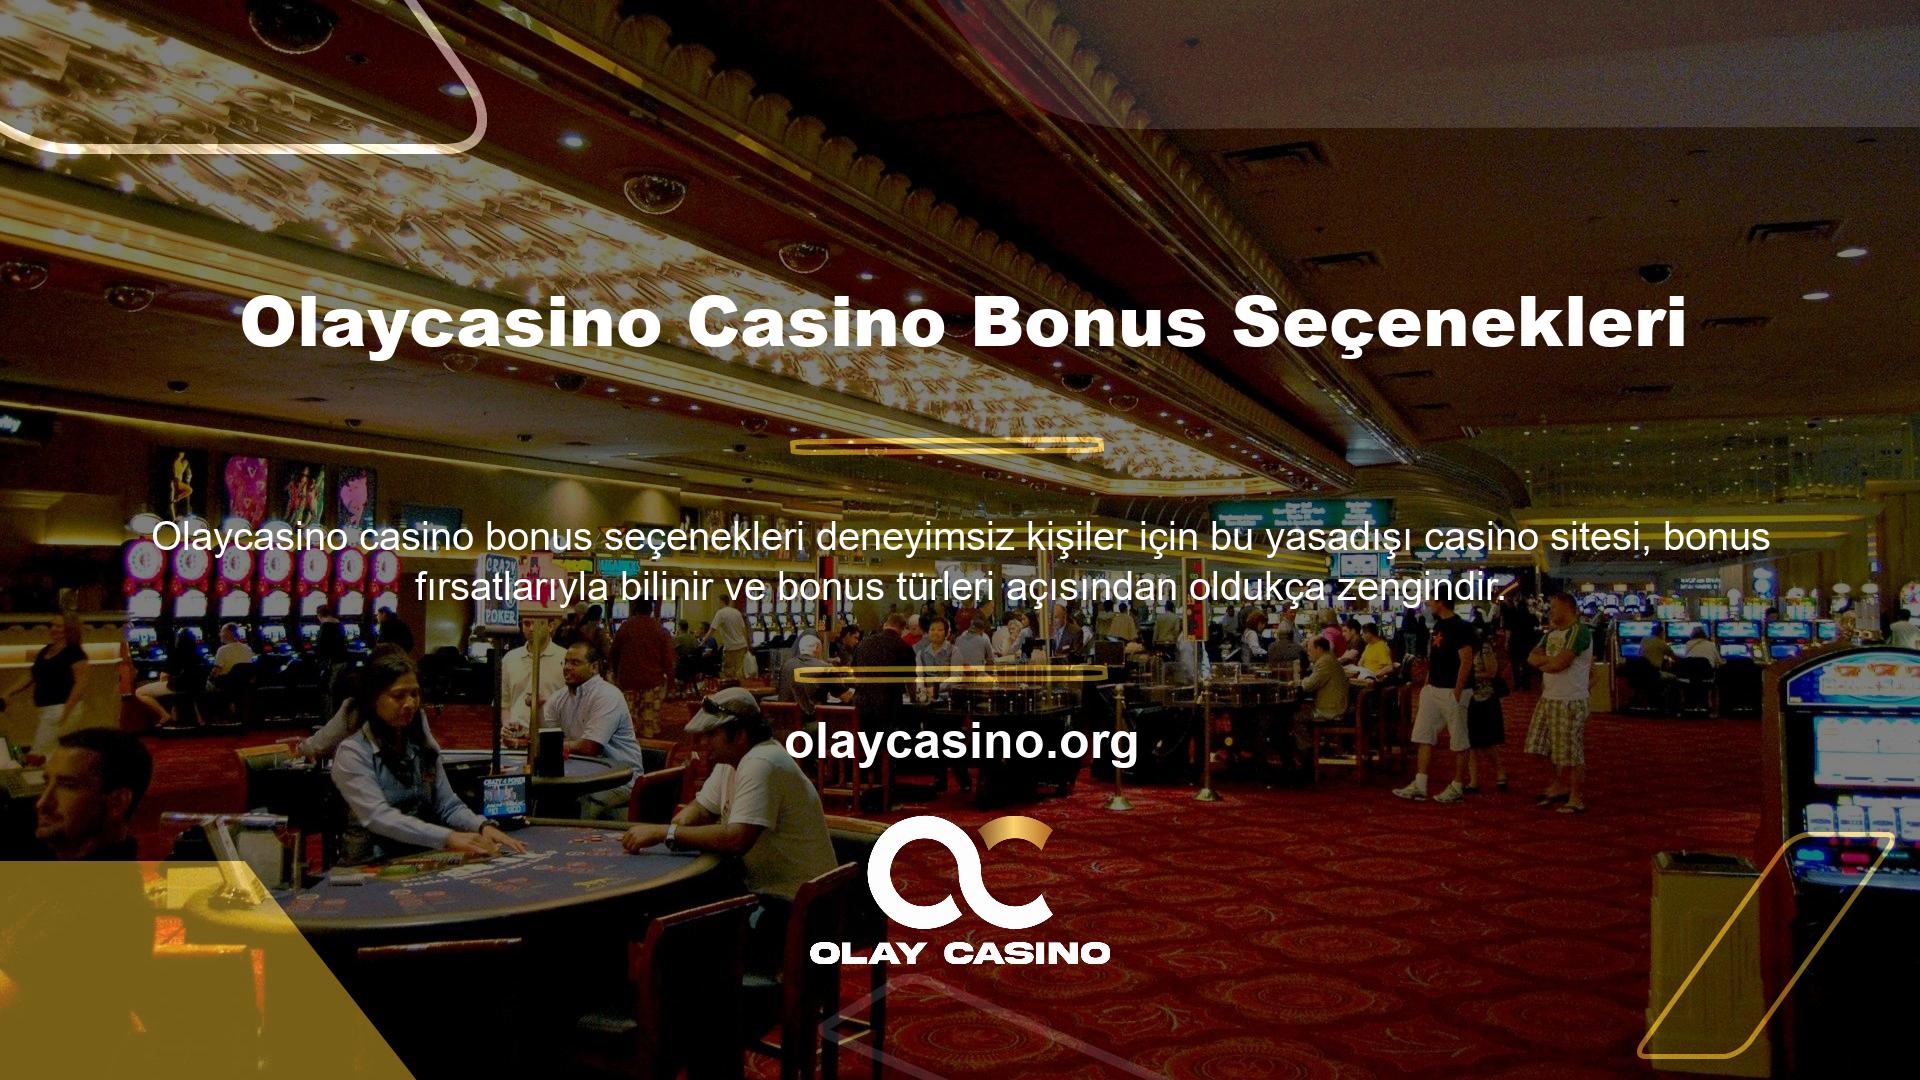 Casino oyunlarını seviyorsanız, bu alanda çok fazla bonus türü olmadığını ve genellikle bedava çevirme gibi bonuslar sunduğunu bilirsiniz